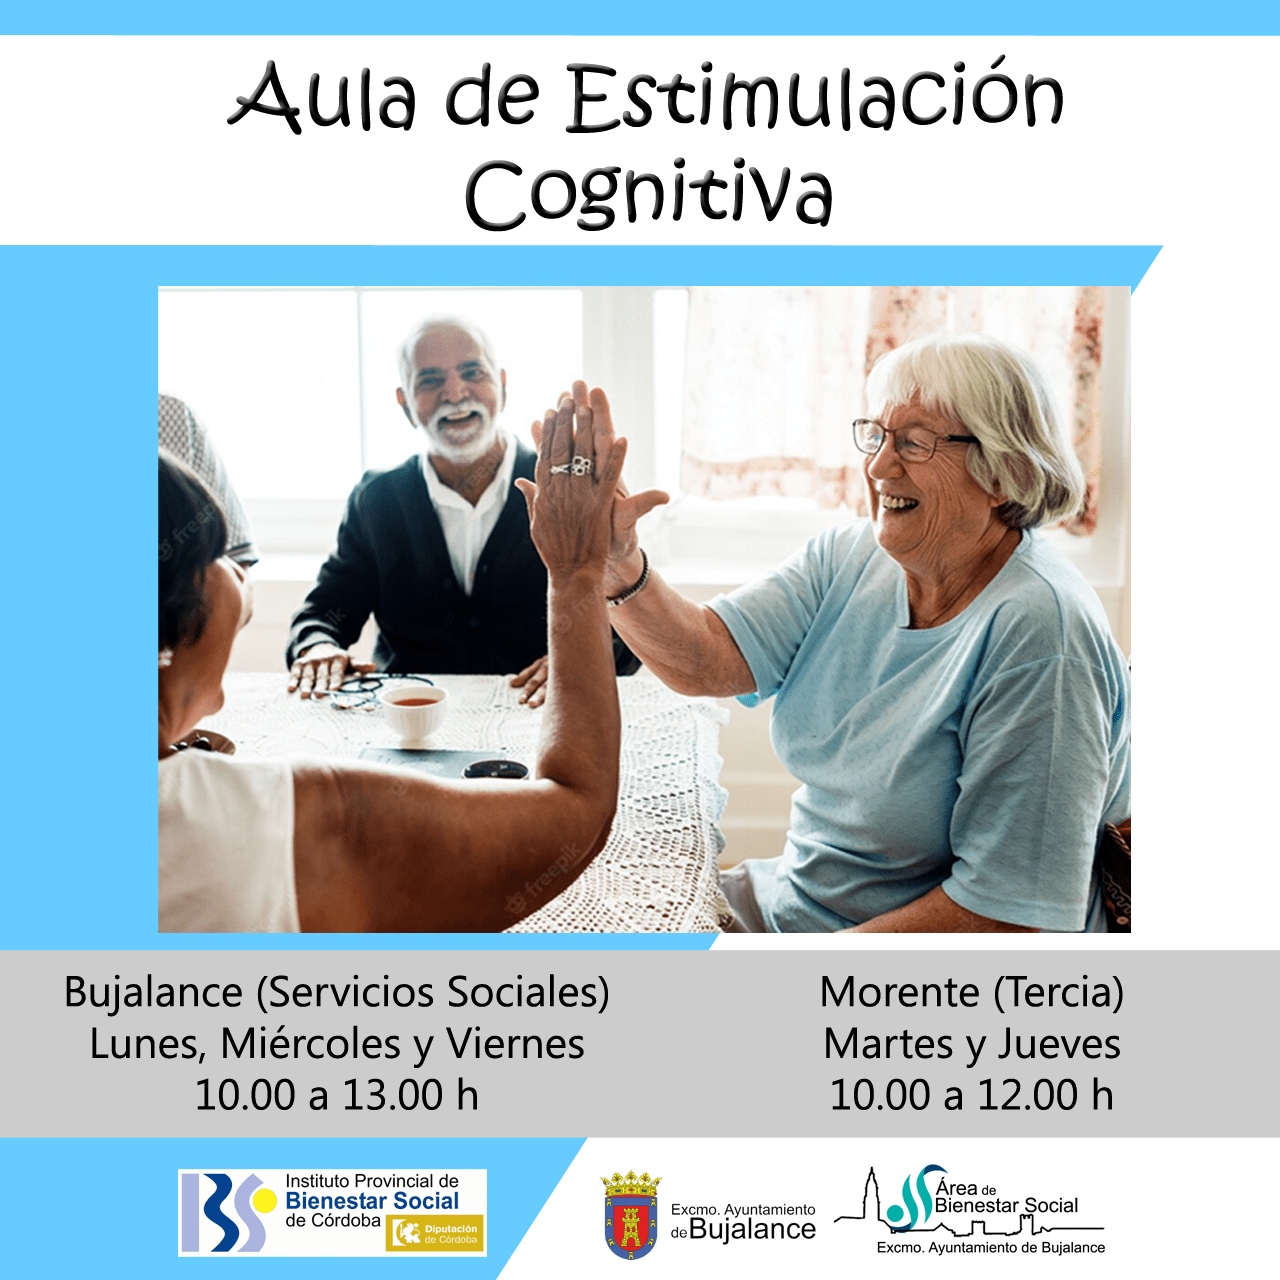 Aula de Estimulación Cognitiva para personas afectadas de alzheimer y/o demencia Bujalance